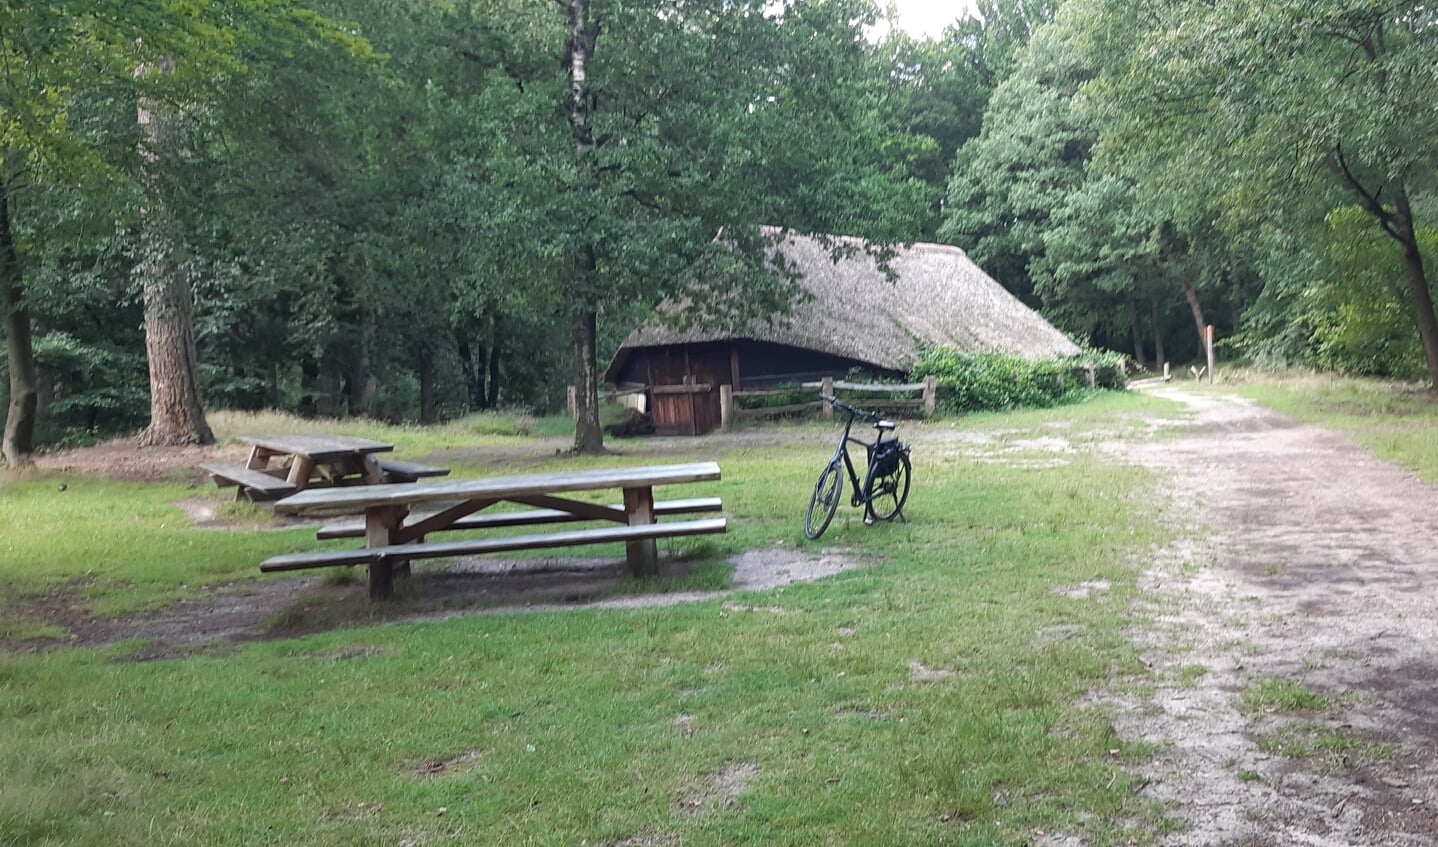 Deze foto is dichtbij gemaakt, de schaapskooi van Boeschoten, ergens in het grensgebied tussen Garderen, Putten en Voorthuizen.